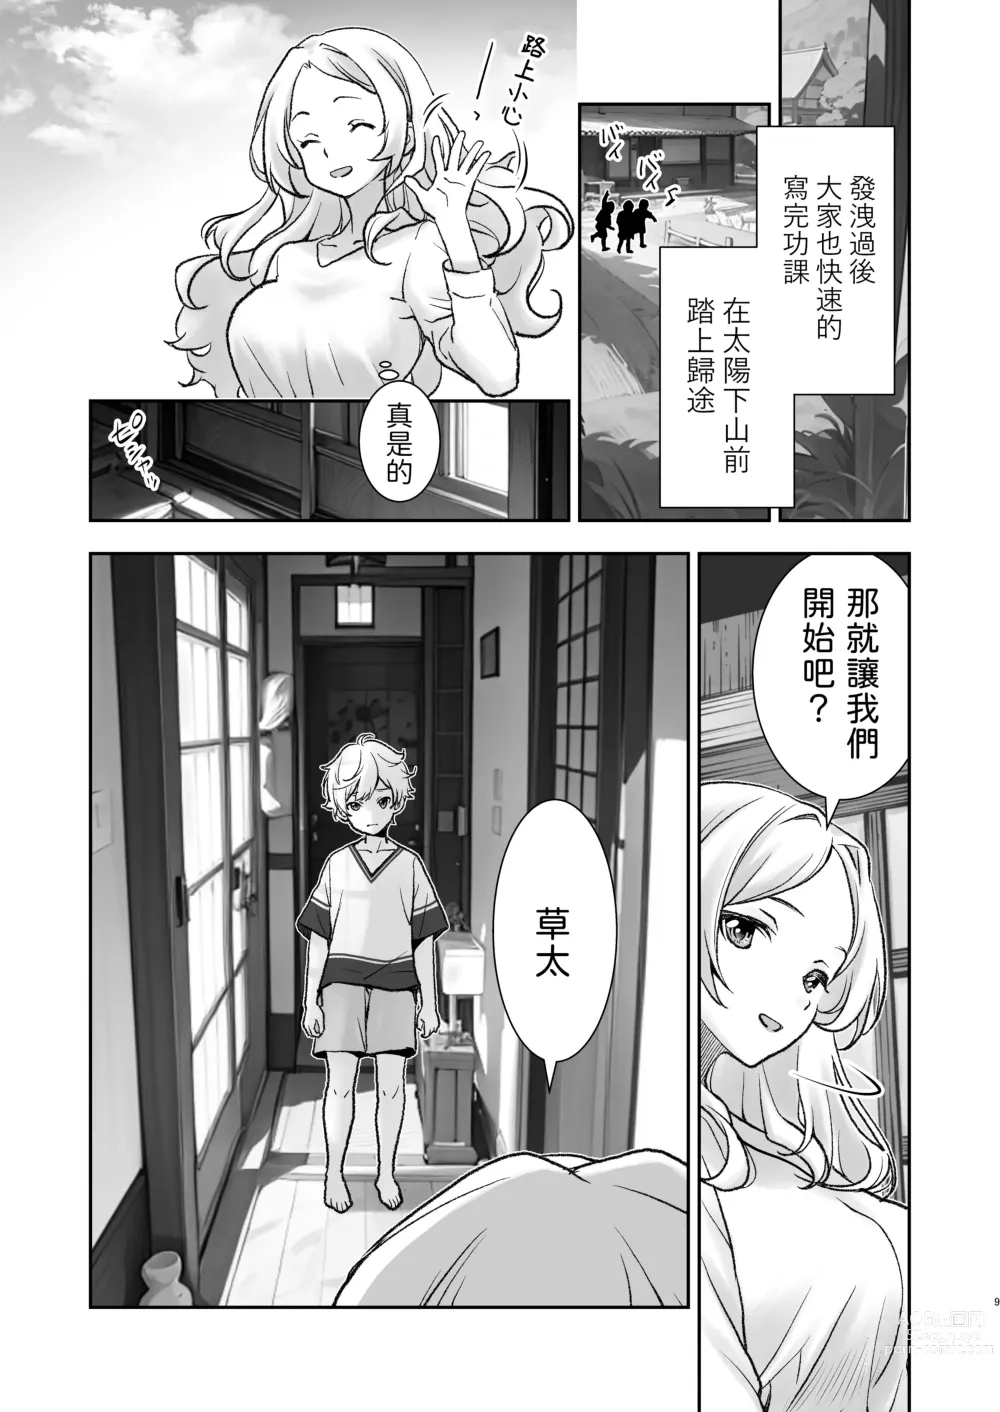 Page 9 of doujinshi Mura ni wa Juku ga Nai no de Watashi ga Benkyou wo Oshiete-imasu.